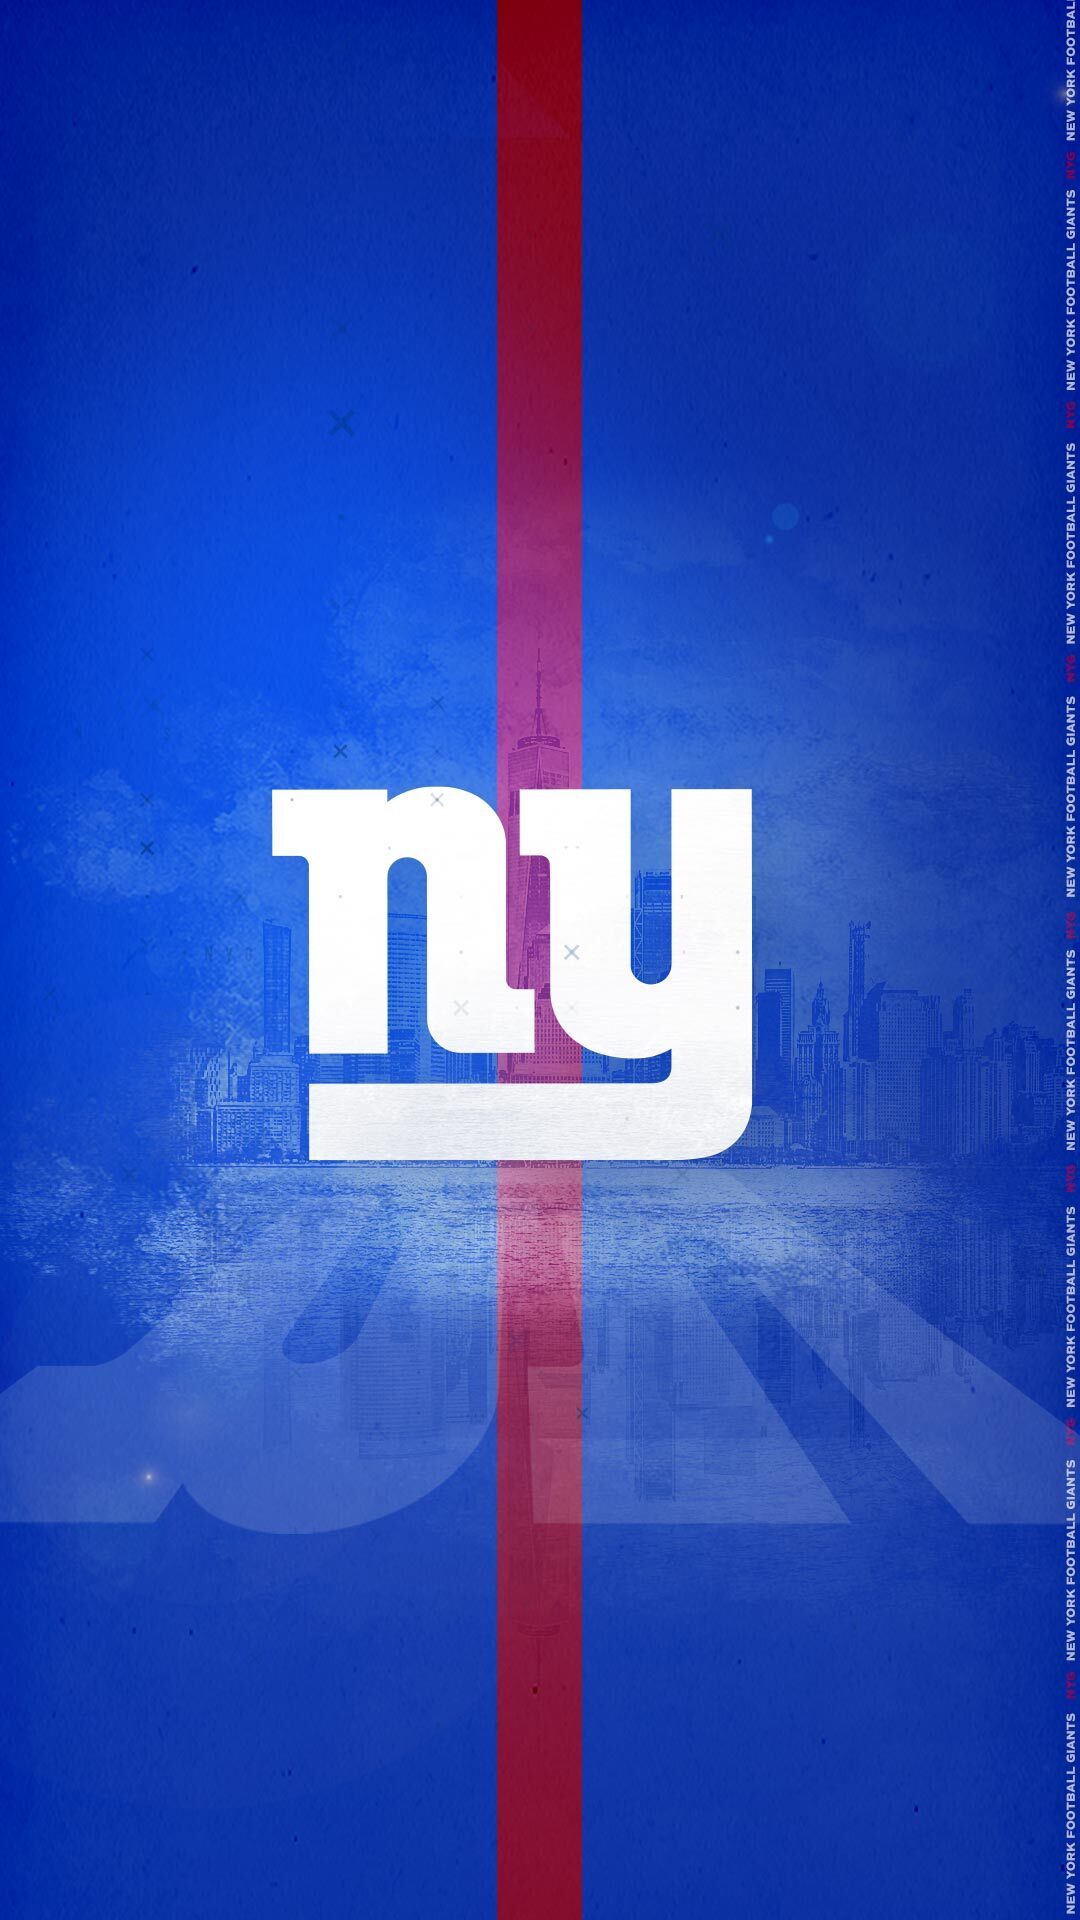 New York Giants szn, new wallpaper